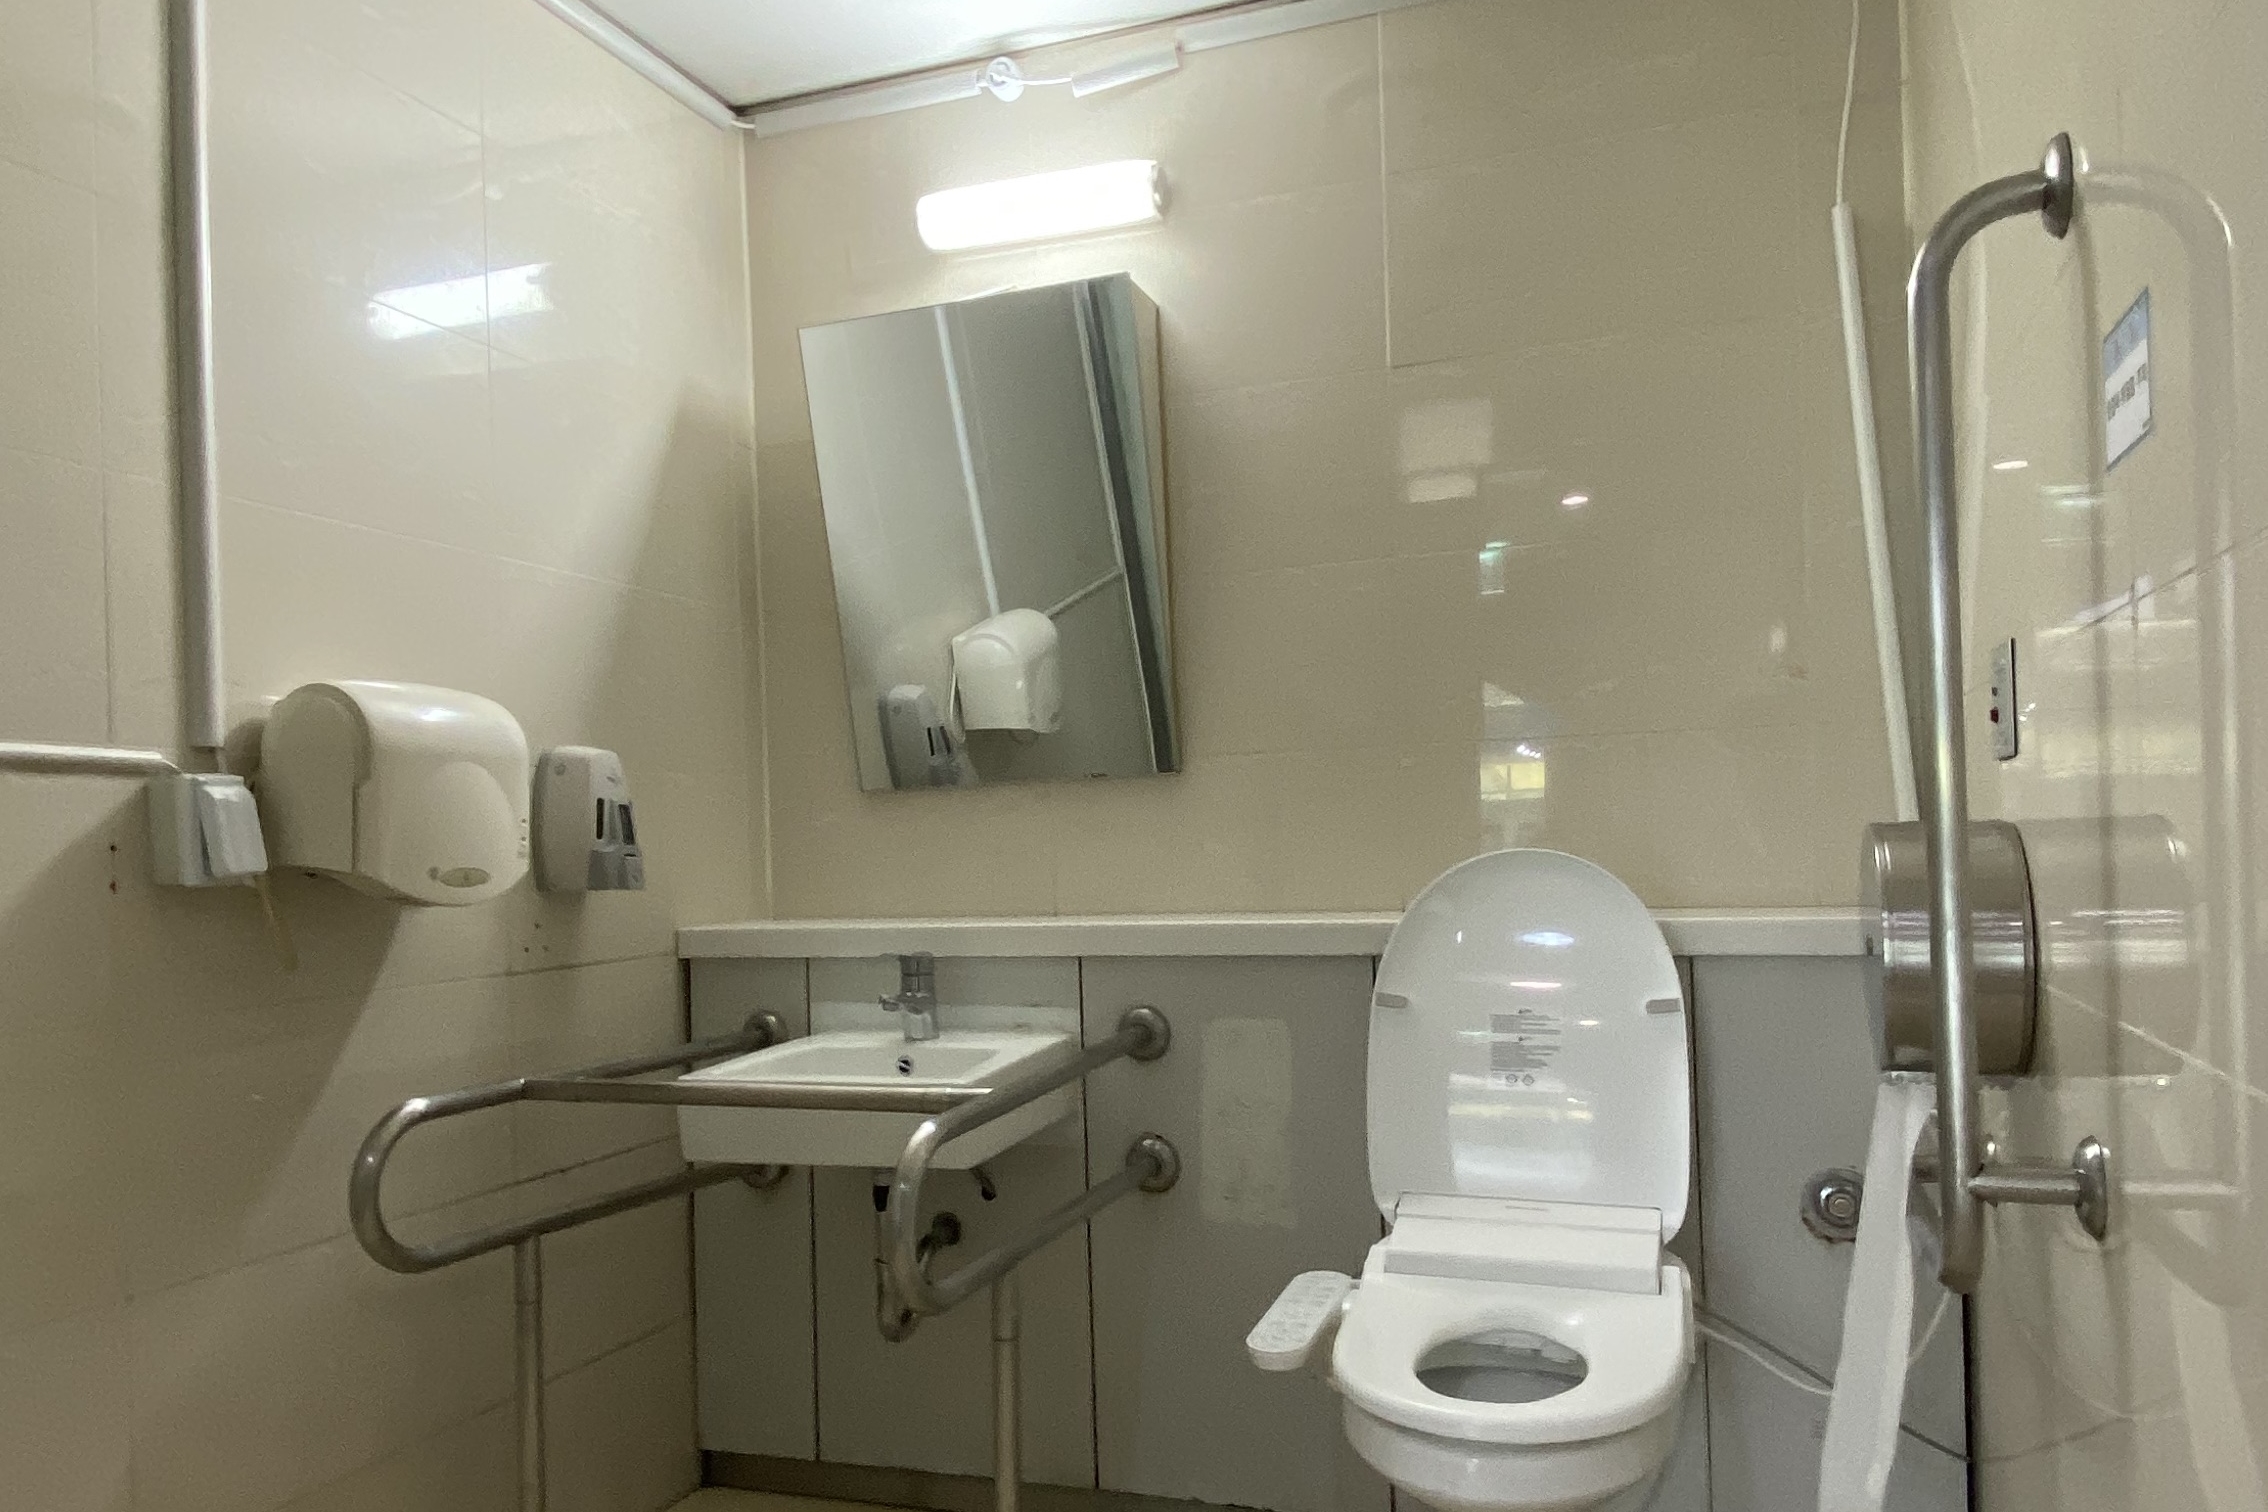 인근 장애인화장실0 : 공간이 넓어 휠체어 사용 가능한 장애인화장실 내부 모습
